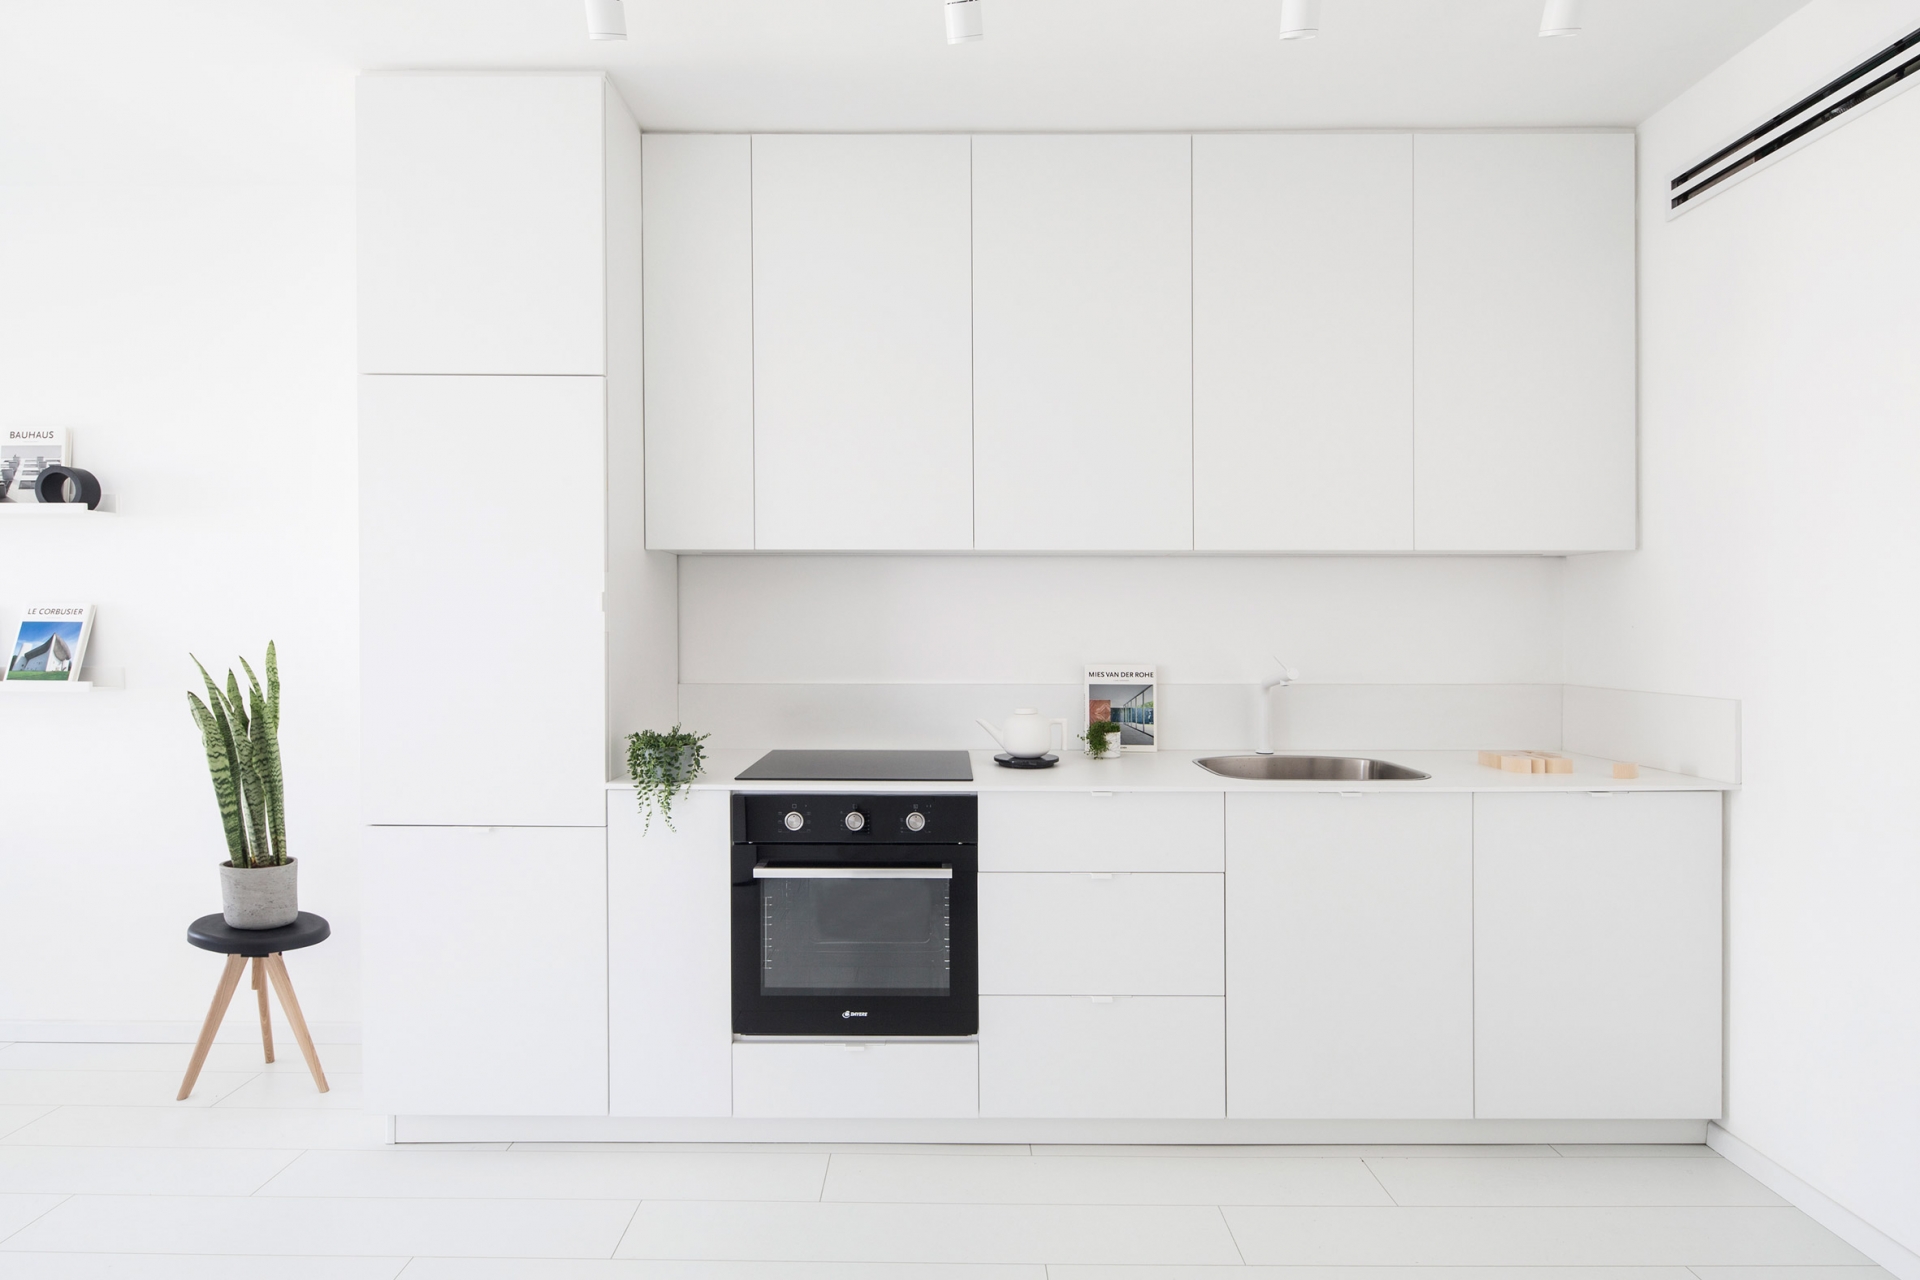 Tủ bếp thiết kế chữ I, vừa phù hợp với cấu trúc của căn hộ vừa là giải pháp thông minh giúp tiết kiệm không gian mà vẫn đảm bảo các yếu tố cơ bản đáp ứng cho công việc bếp núc. Chiếc lò nướng màu đen cũng trở thành điểm nhấn bắt mắt trong khu vực này.